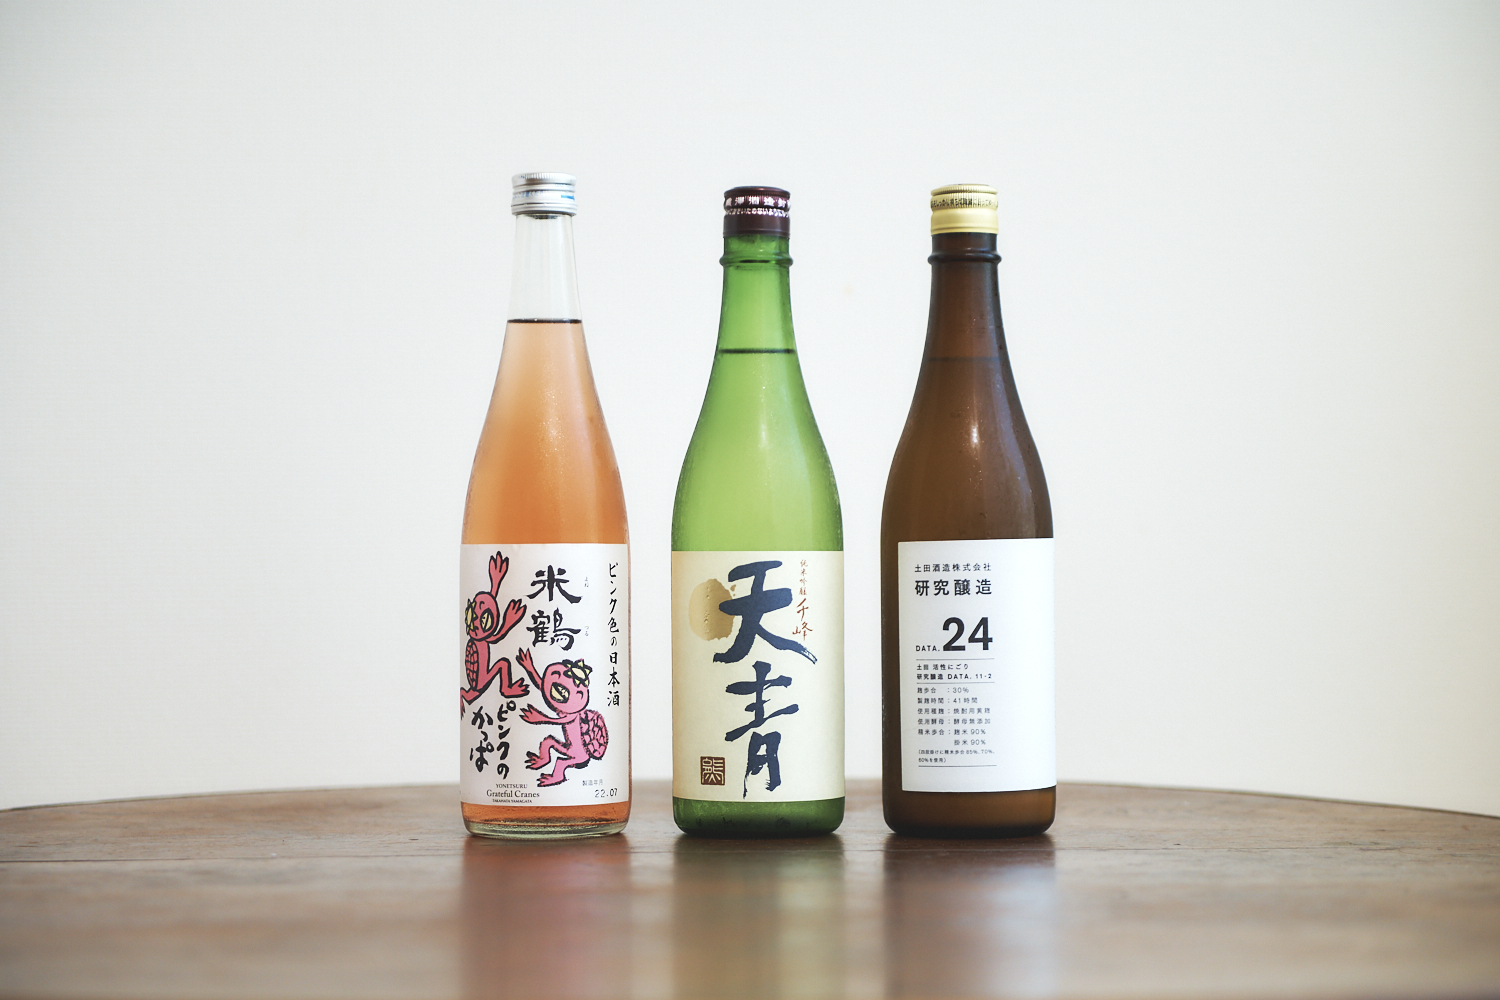 （左から）「米鶴 ピンクのかっぱ純米酒」「千鋒天青 純米吟醸」「土田 研究醸造 24 活性にごり生酒」